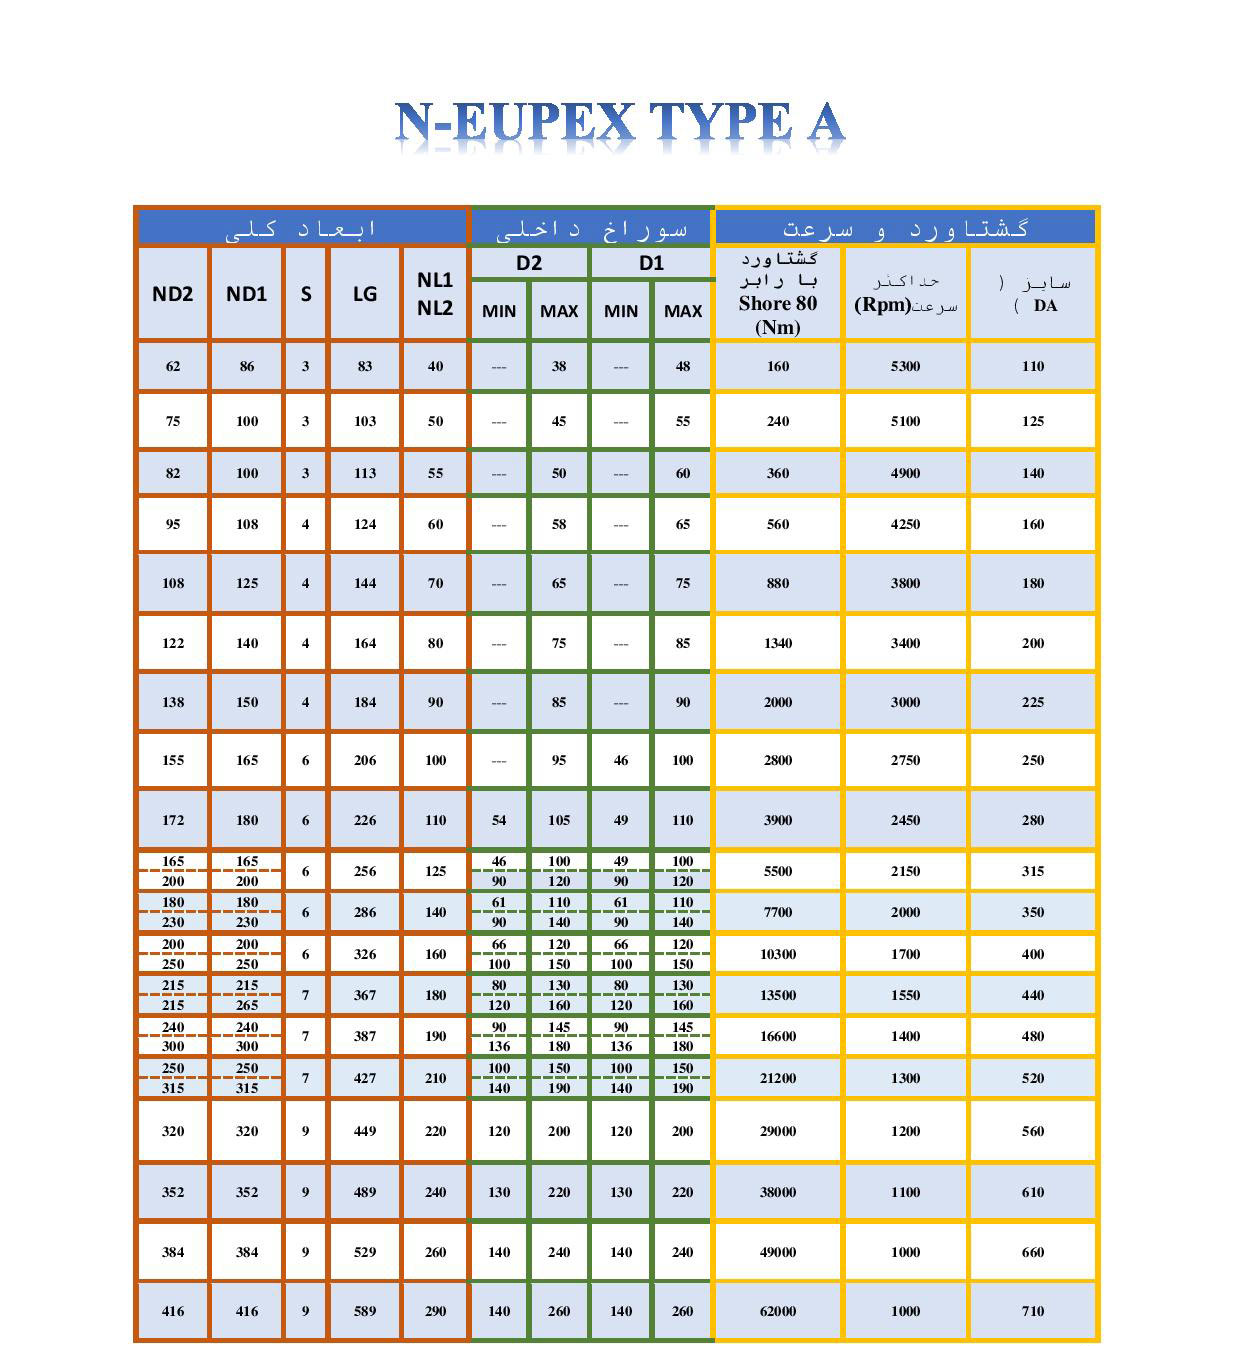 کوپلینگ N-EUPEX